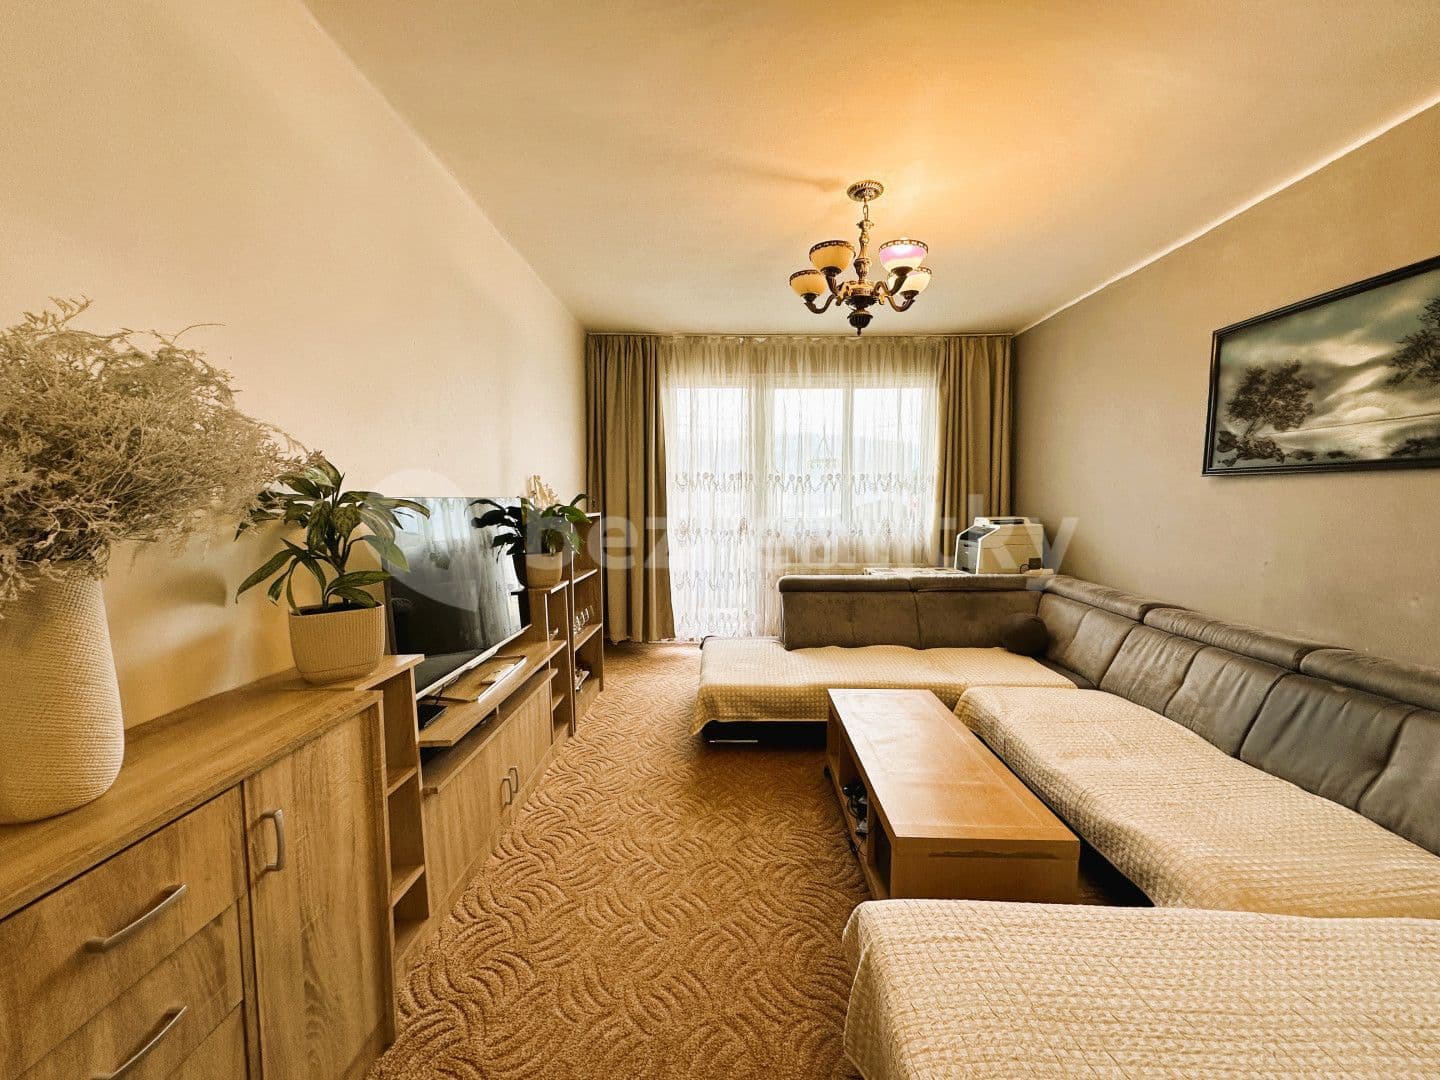 2 bedroom flat for sale, 51 m², Radniční, Tanvald, Liberecký Region